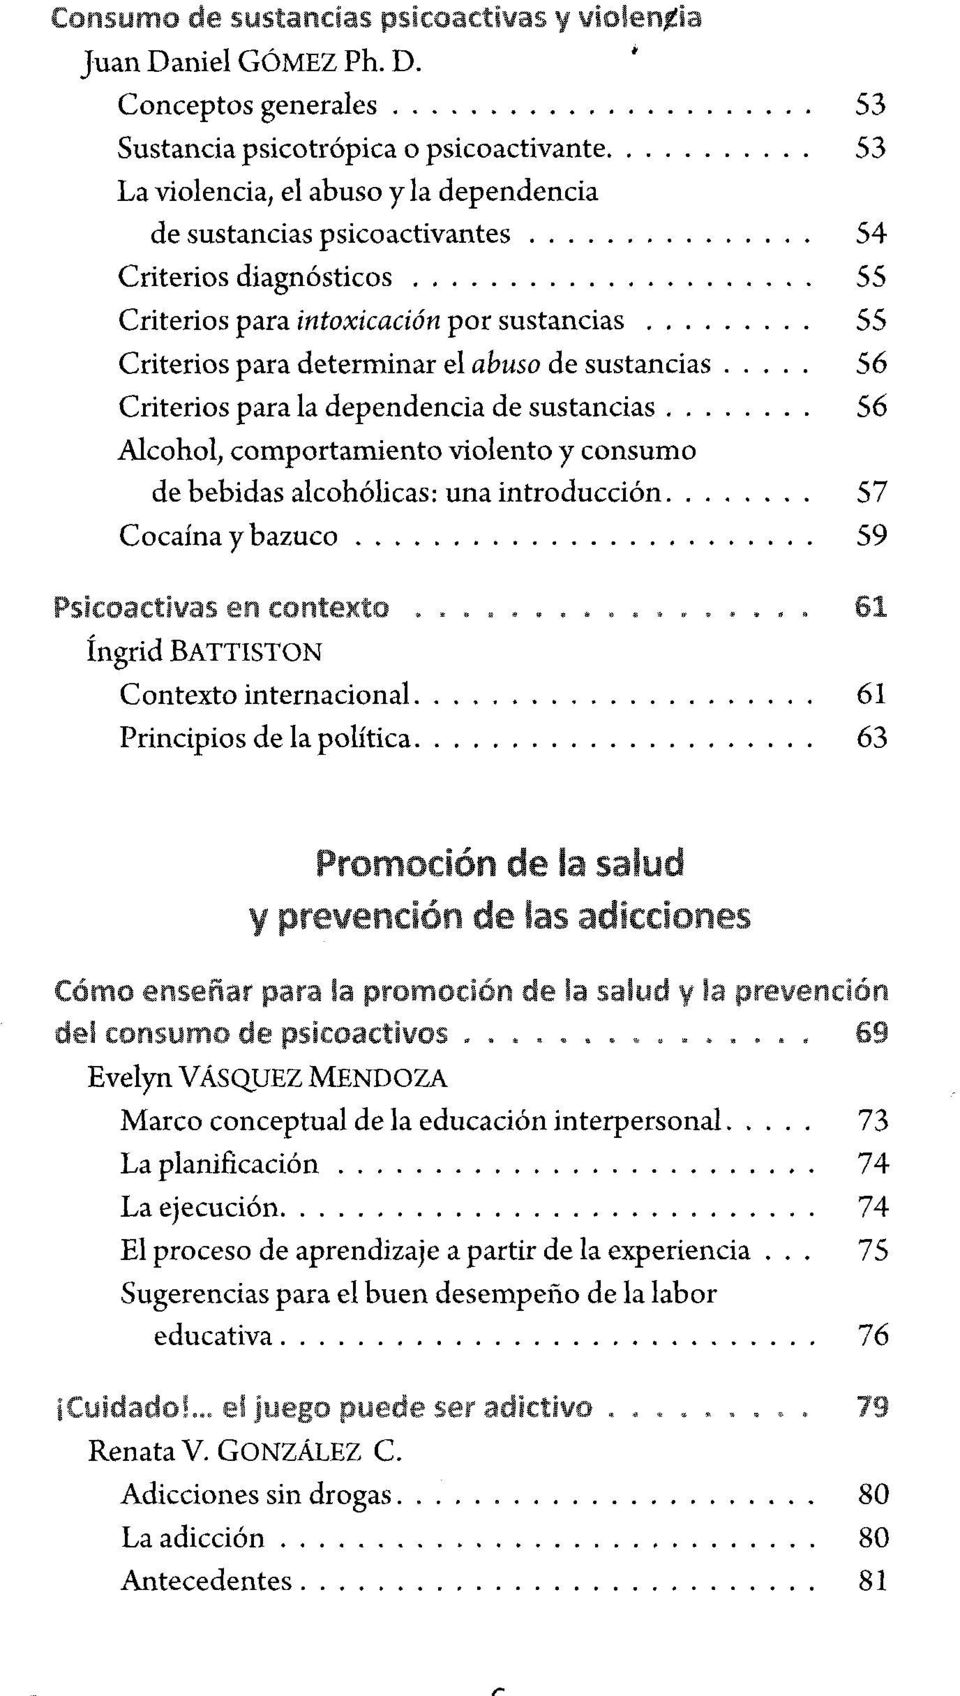 .. 55 Criterios para determ inar el abuso de sustancias 56 Criterios para la dependencia de sustancias... 56 Alcohol, com portam iento violento y consum o de bebidas alcohólicas: una introducción.